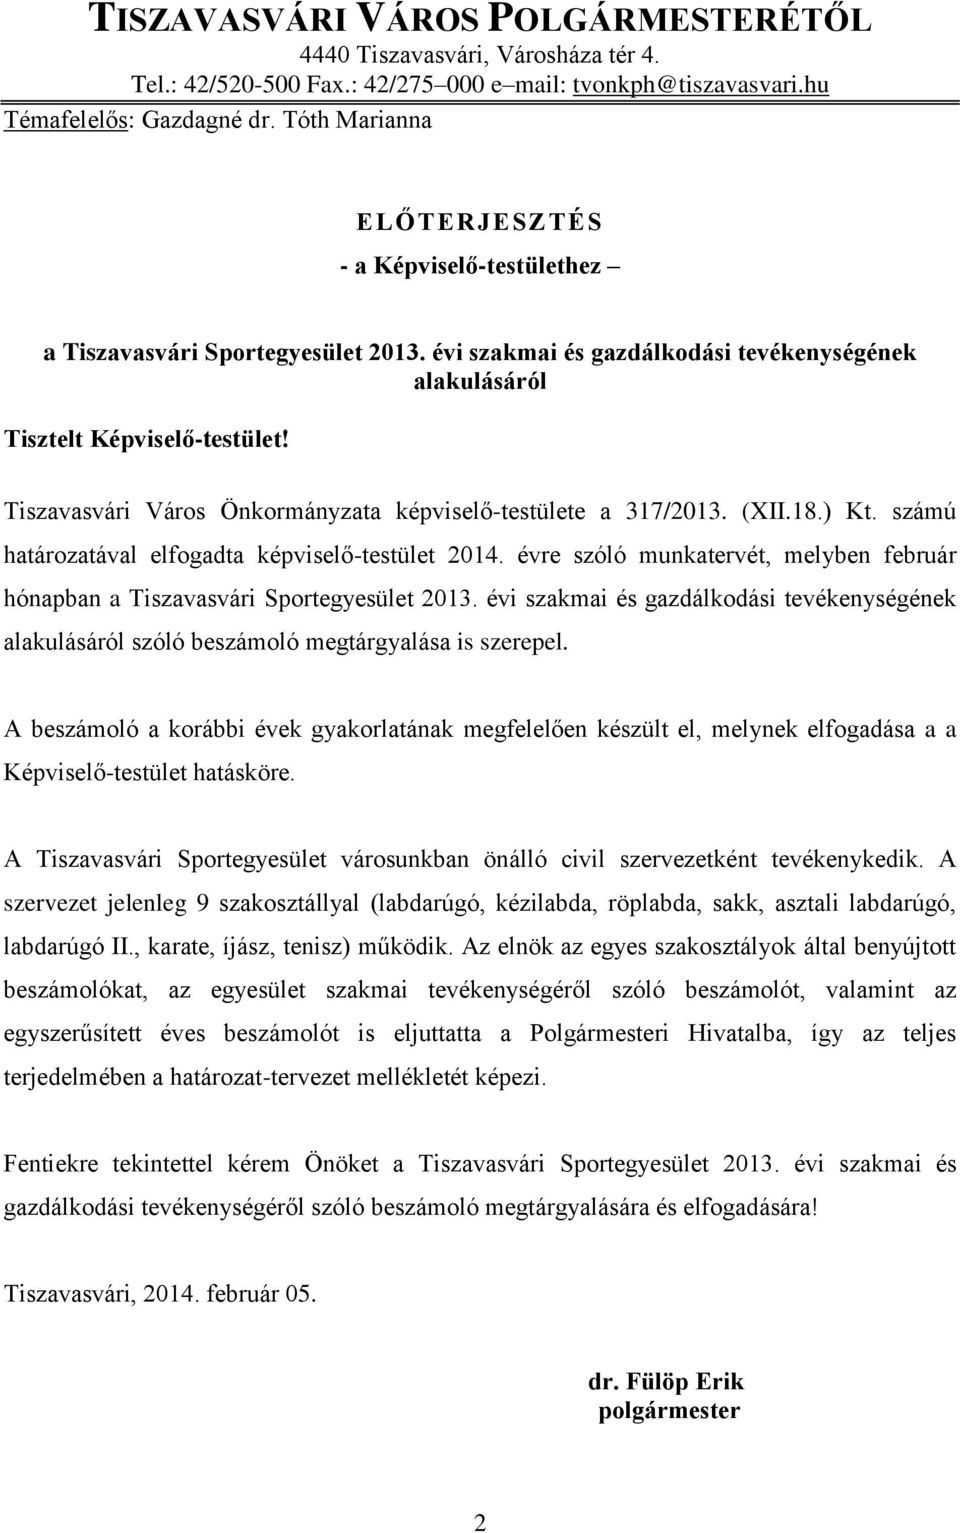 Tiszavasvári Város Önkormányzata képviselő-testülete a 317/2013. (XII.18.) Kt. számú határozatával elfogadta képviselő-testület 2014.